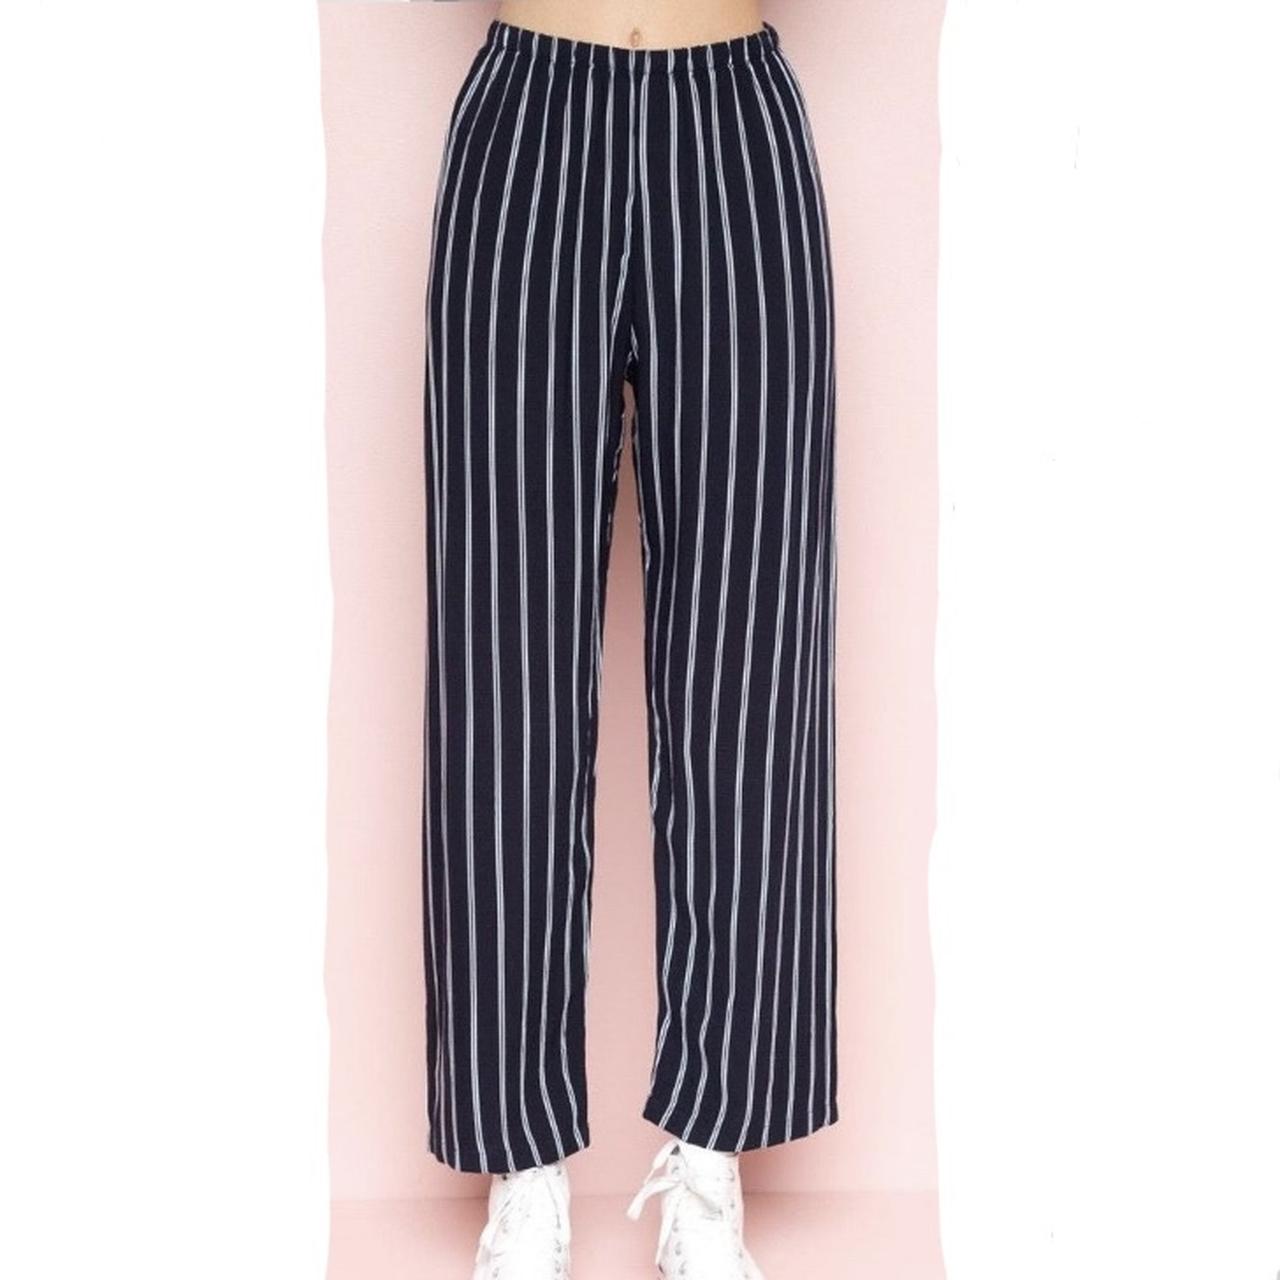 Brandy Melville Tilden Pants Gray Black Striped Women's | eBay